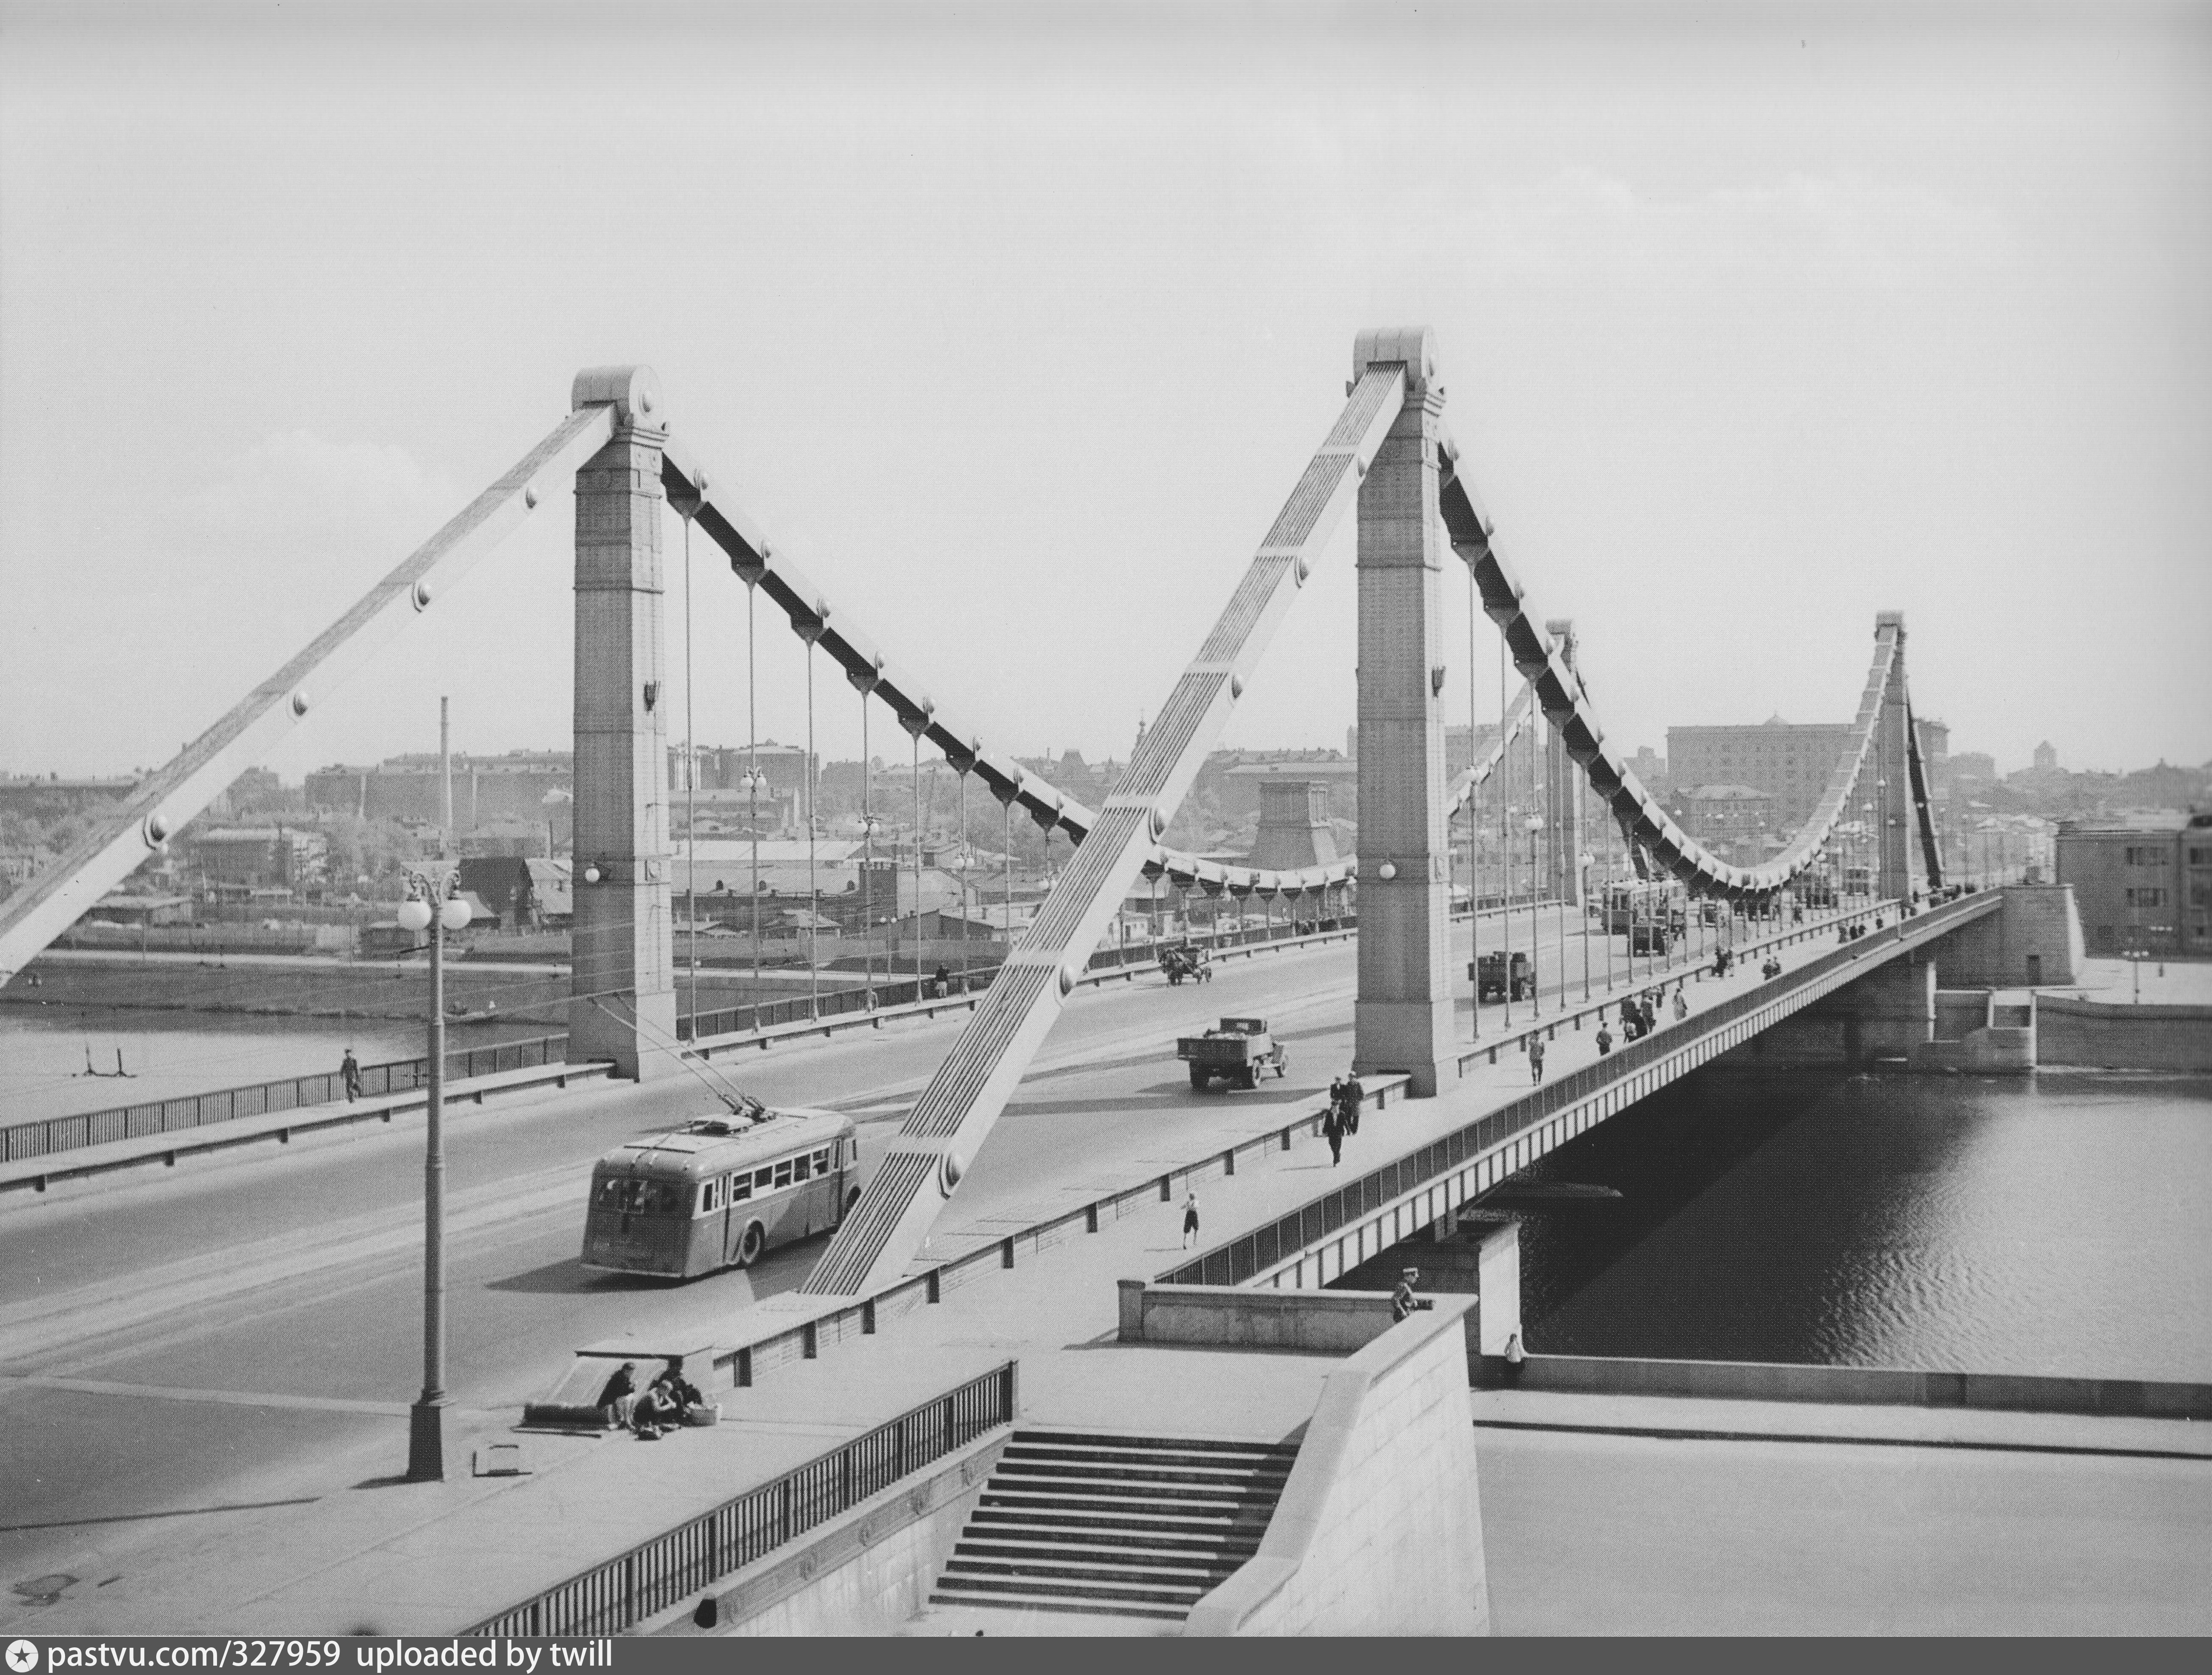 старый крымский мост в москве